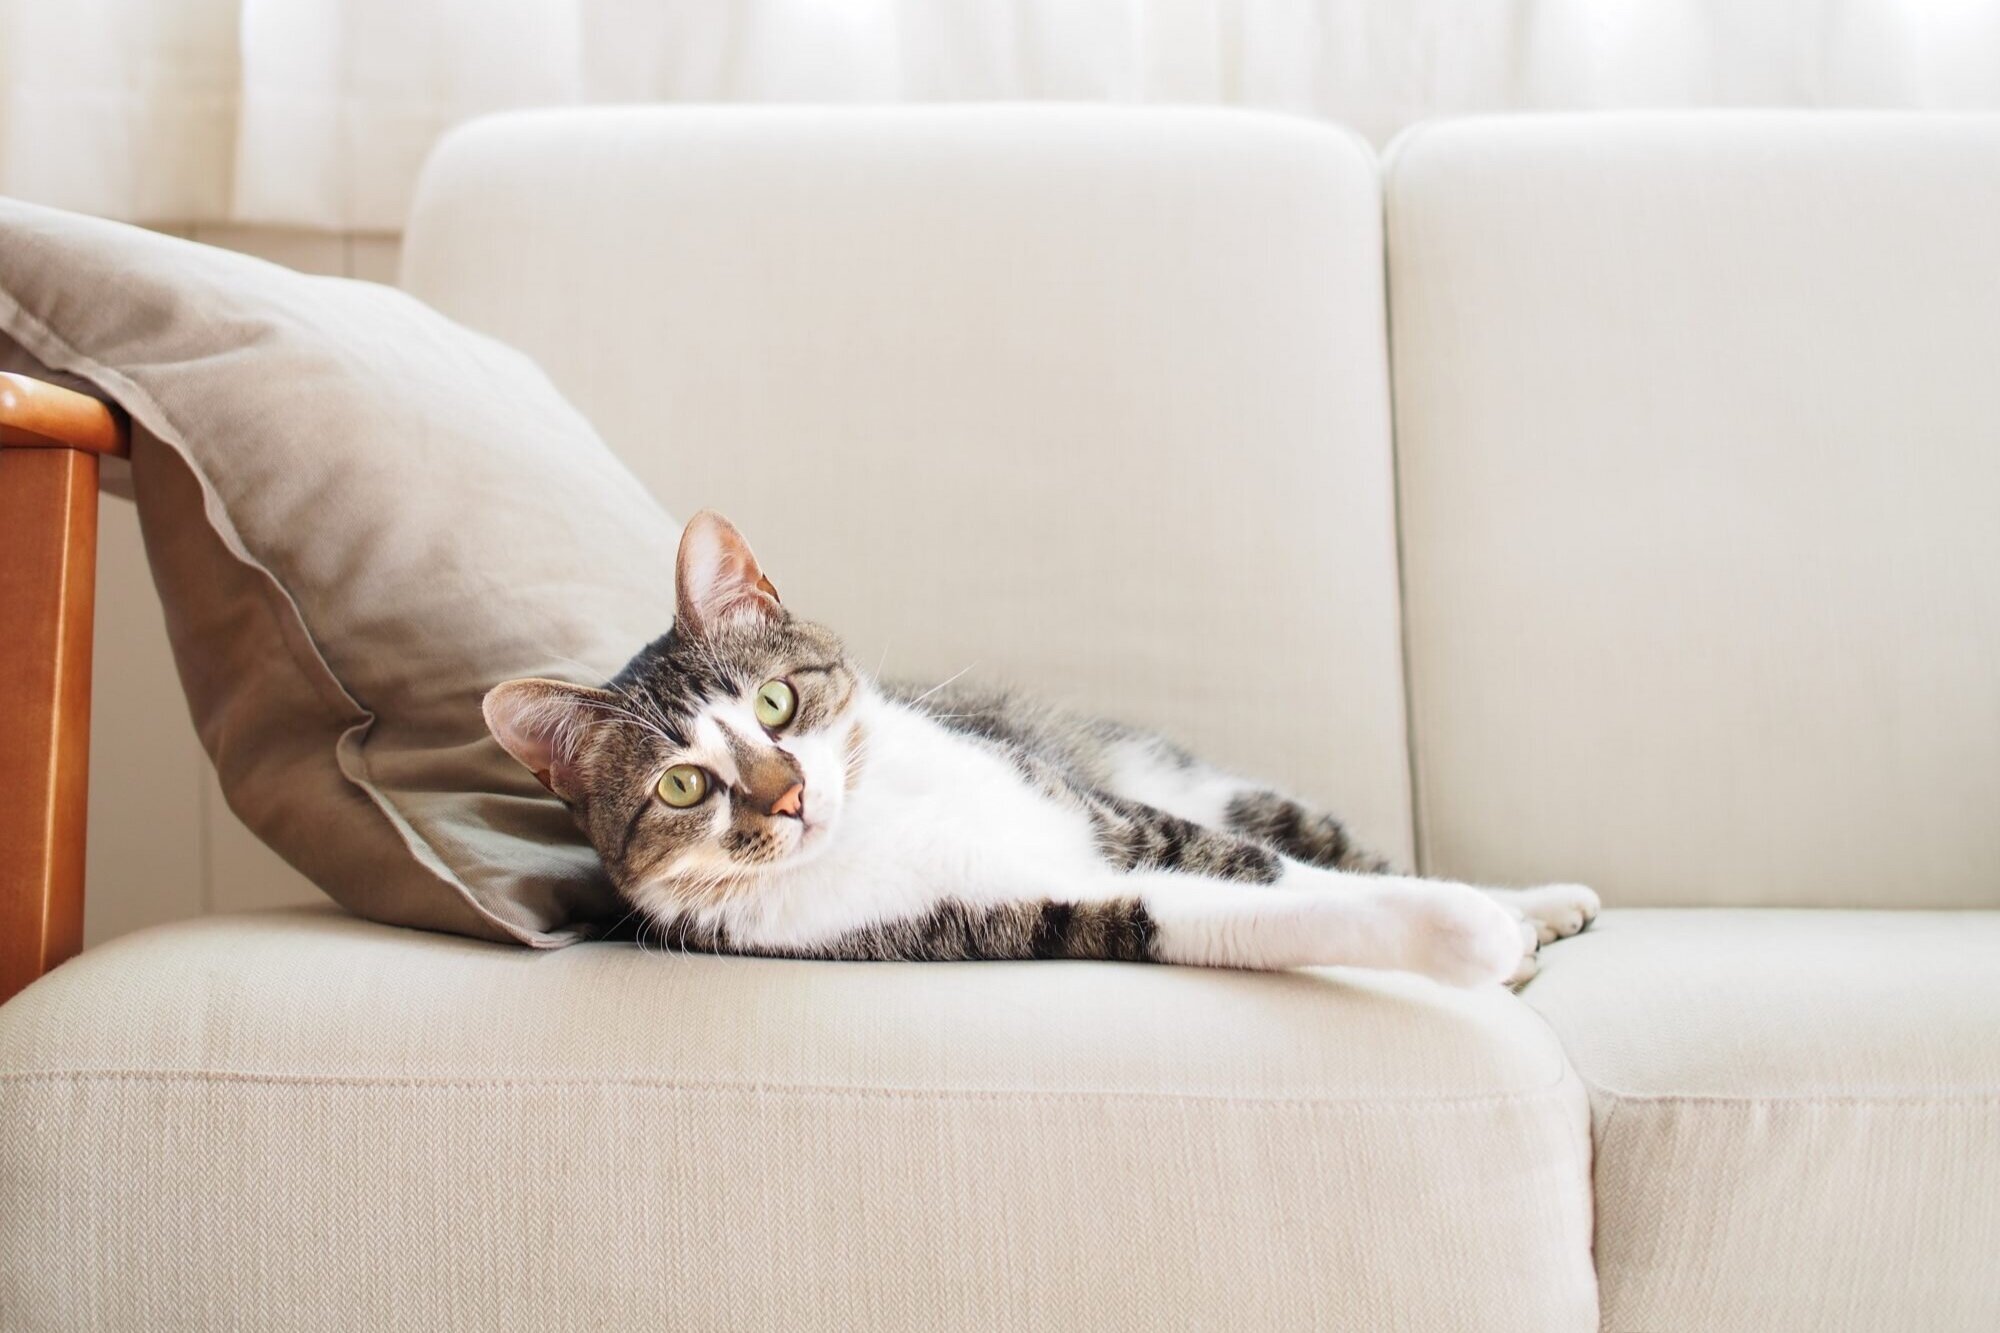 Kediler İçin Evde Yapılabilecek Oyuncak Önerileri | Kendin Yap Kedi  Oyuncakları — Dekorasyon Önerileri & Trendler, Kendin Yap Fikirleri |  Armut.com Blog